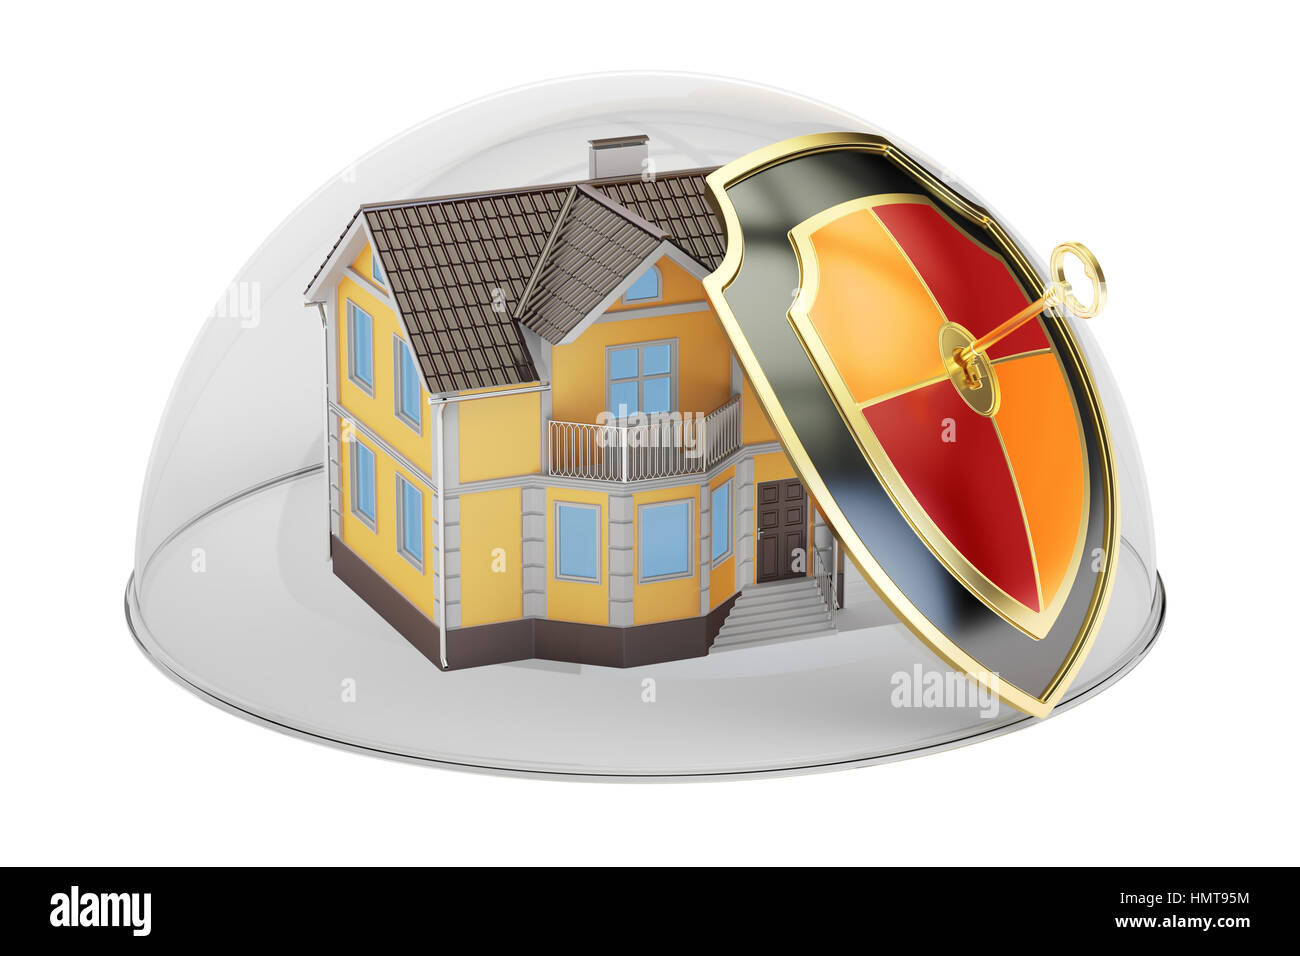 Accueil sécurité et protection concept, maison couverte en dôme de verre.  Le rendu 3D Photo Stock - Alamy